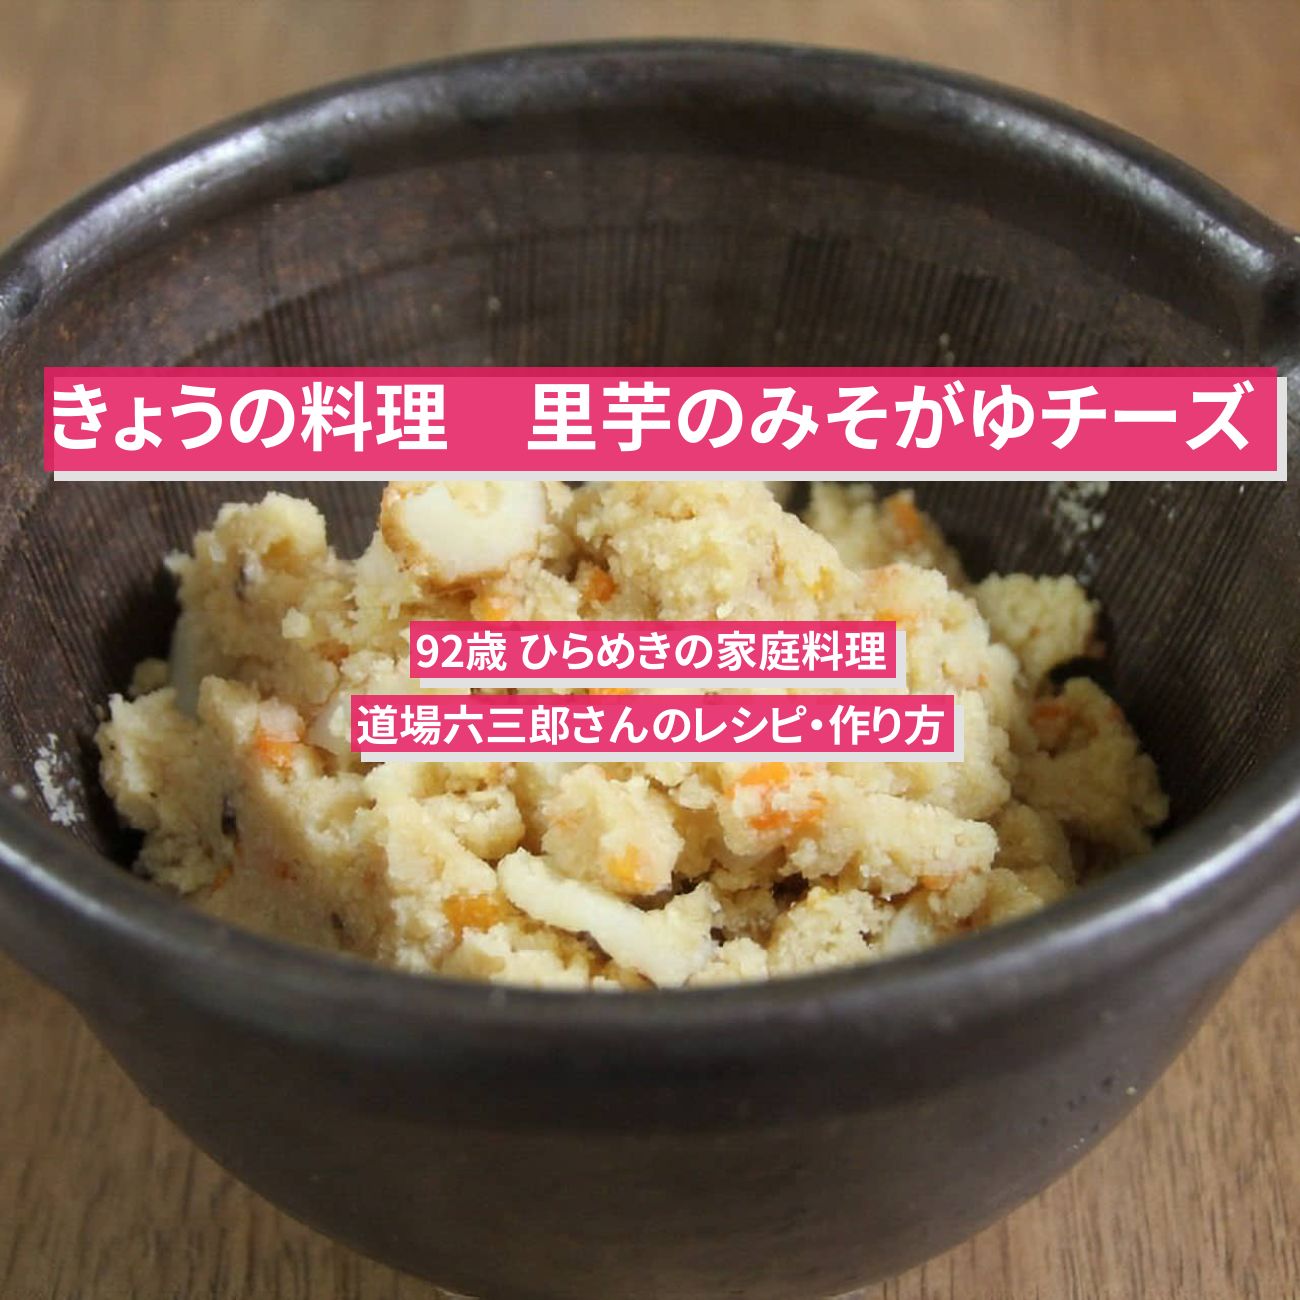 【きょうの料理】『里芋のみそがゆチーズ』道場六三郎さんのレシピ・作り方